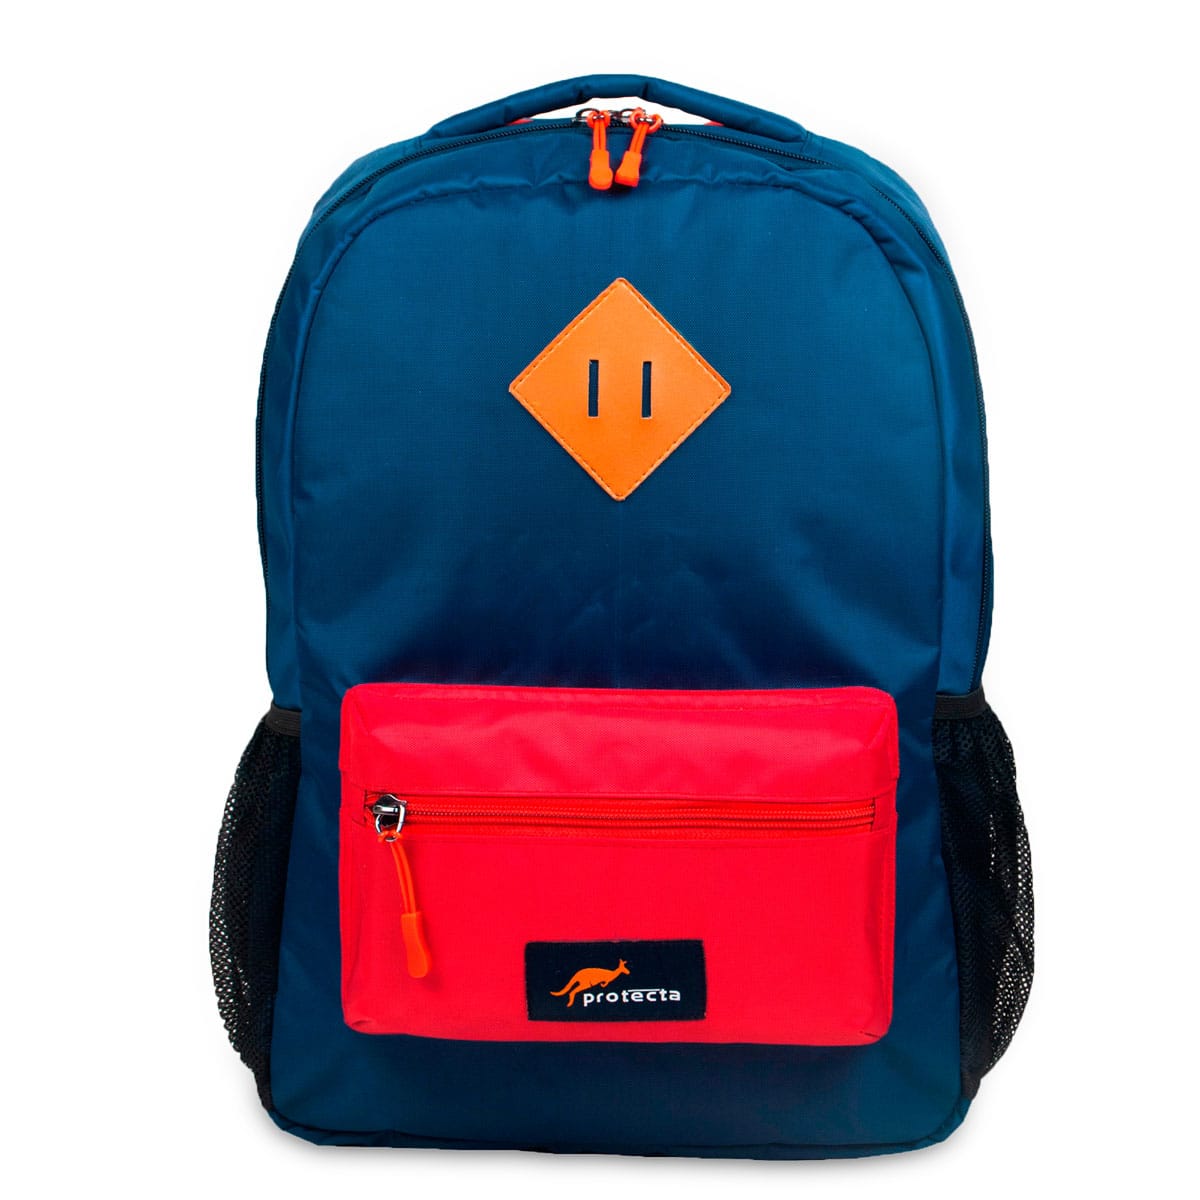 School & College Bags